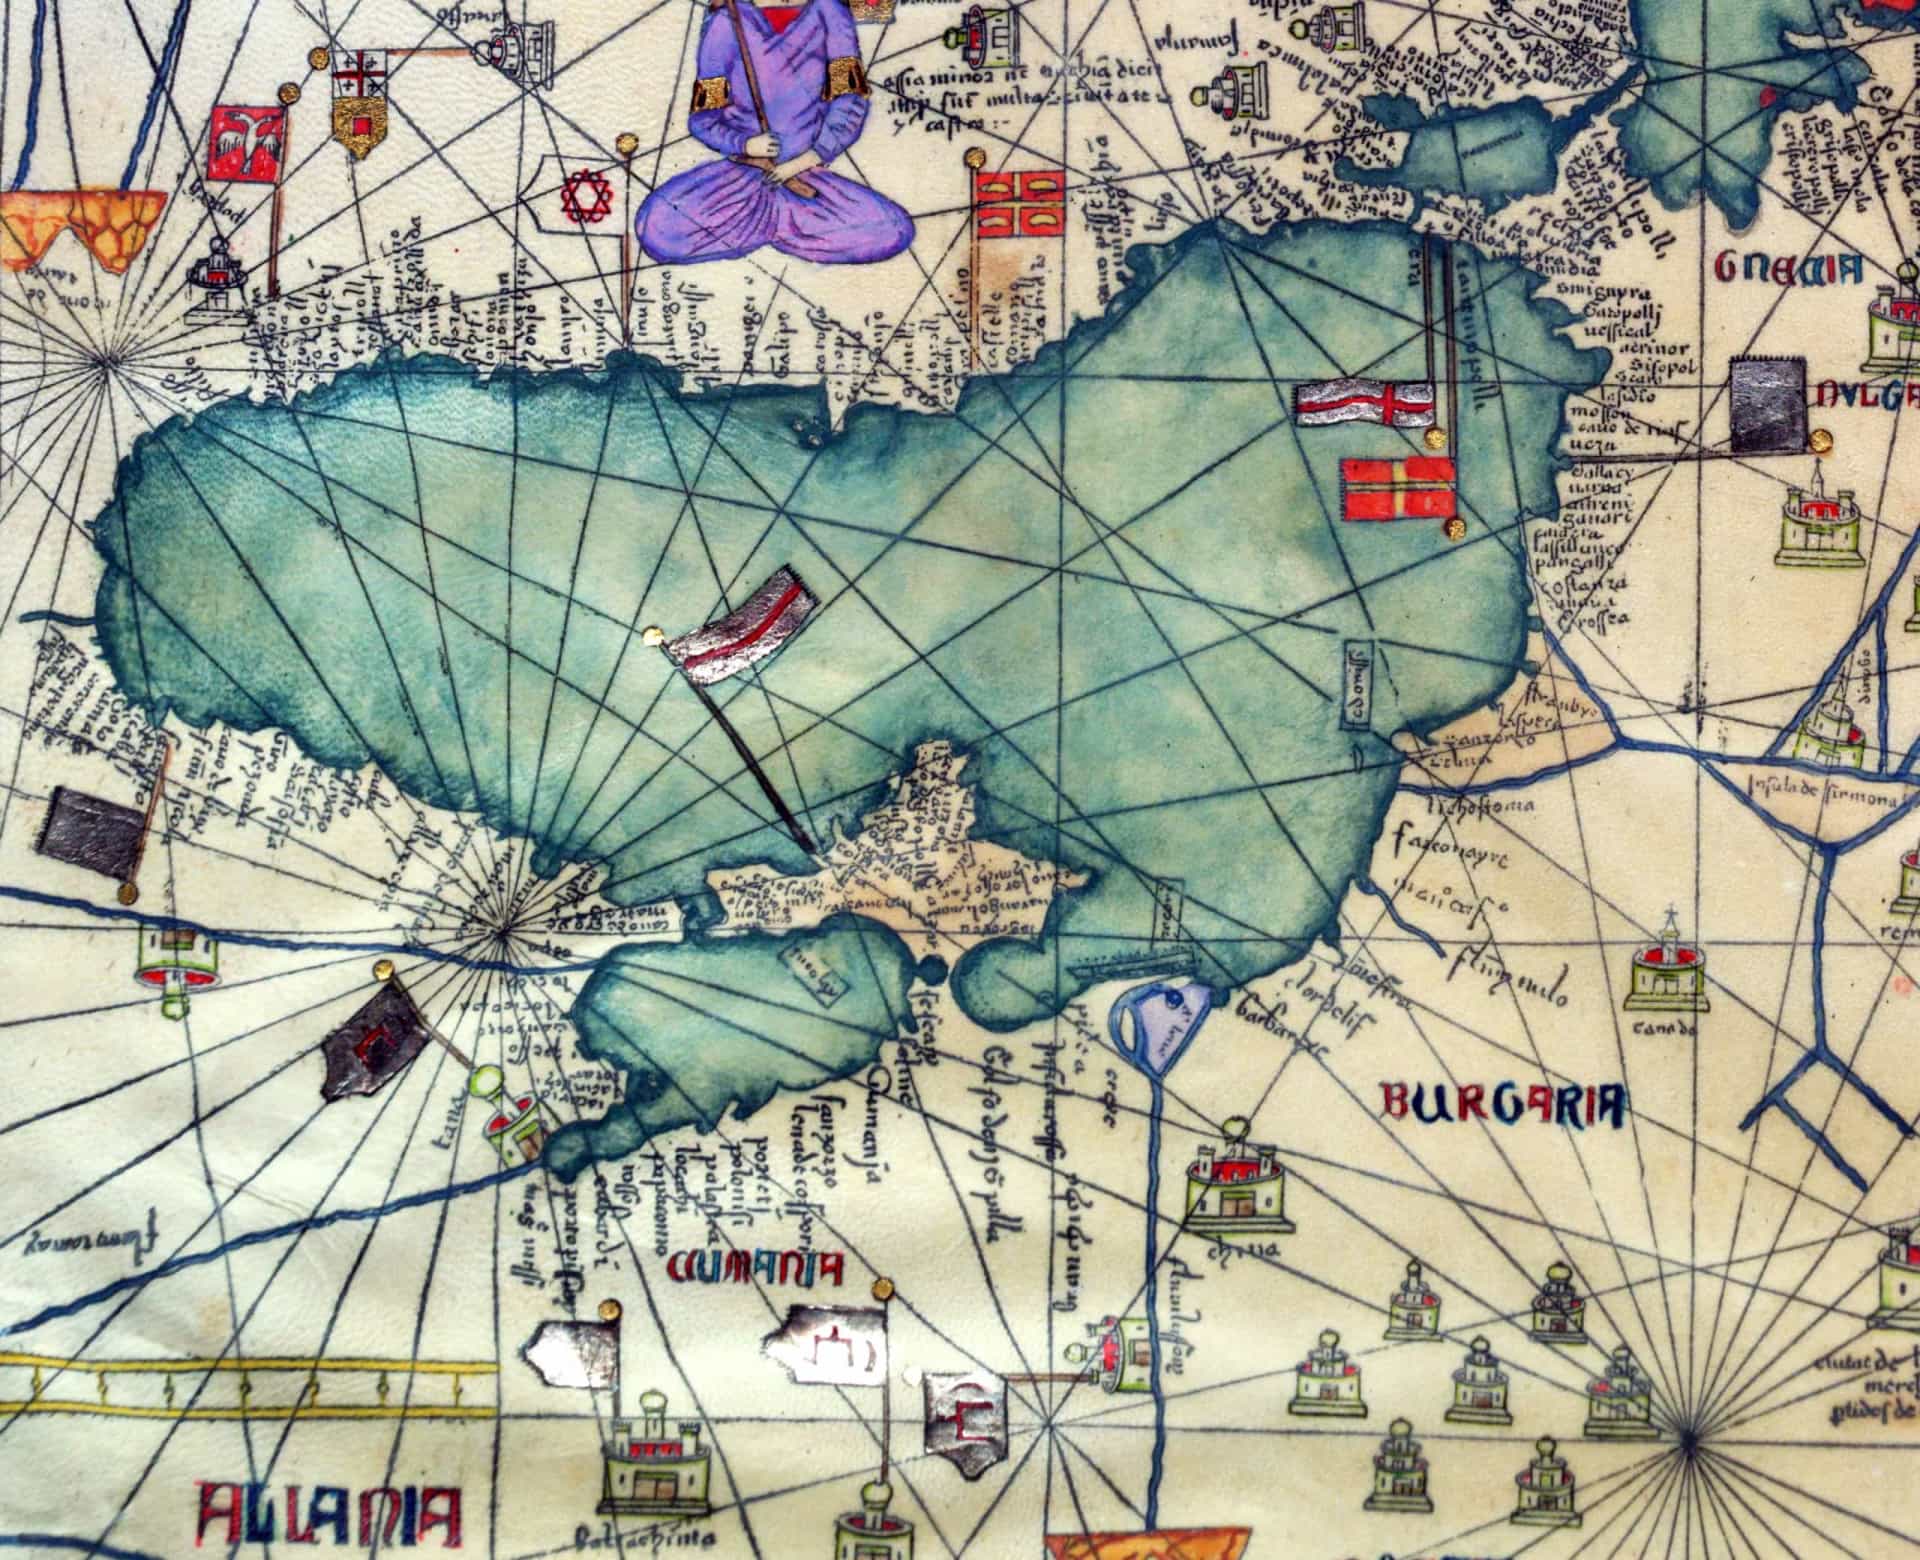 <p>De pest is waarschijnlijk ontstaan ​​in Oost-Azië, hoogstwaarschijnlijk rond 1346 in Mongolië. Hij deed zijn definitieve intrede op de Krim in 134. Het kwam daar terecht door vlooien op ratten, die per Genuese koopvaardijschepen de Zwarte Zee over staken. Deze regio zie je hier op deze omgekeerde kaart van Egypte, Turkije, Bulgarije, Oekraïne en de Zwarte Zee, zoals geïllustreerd in de Catalaanse Atlas, gepubliceerd in 1375.</p>